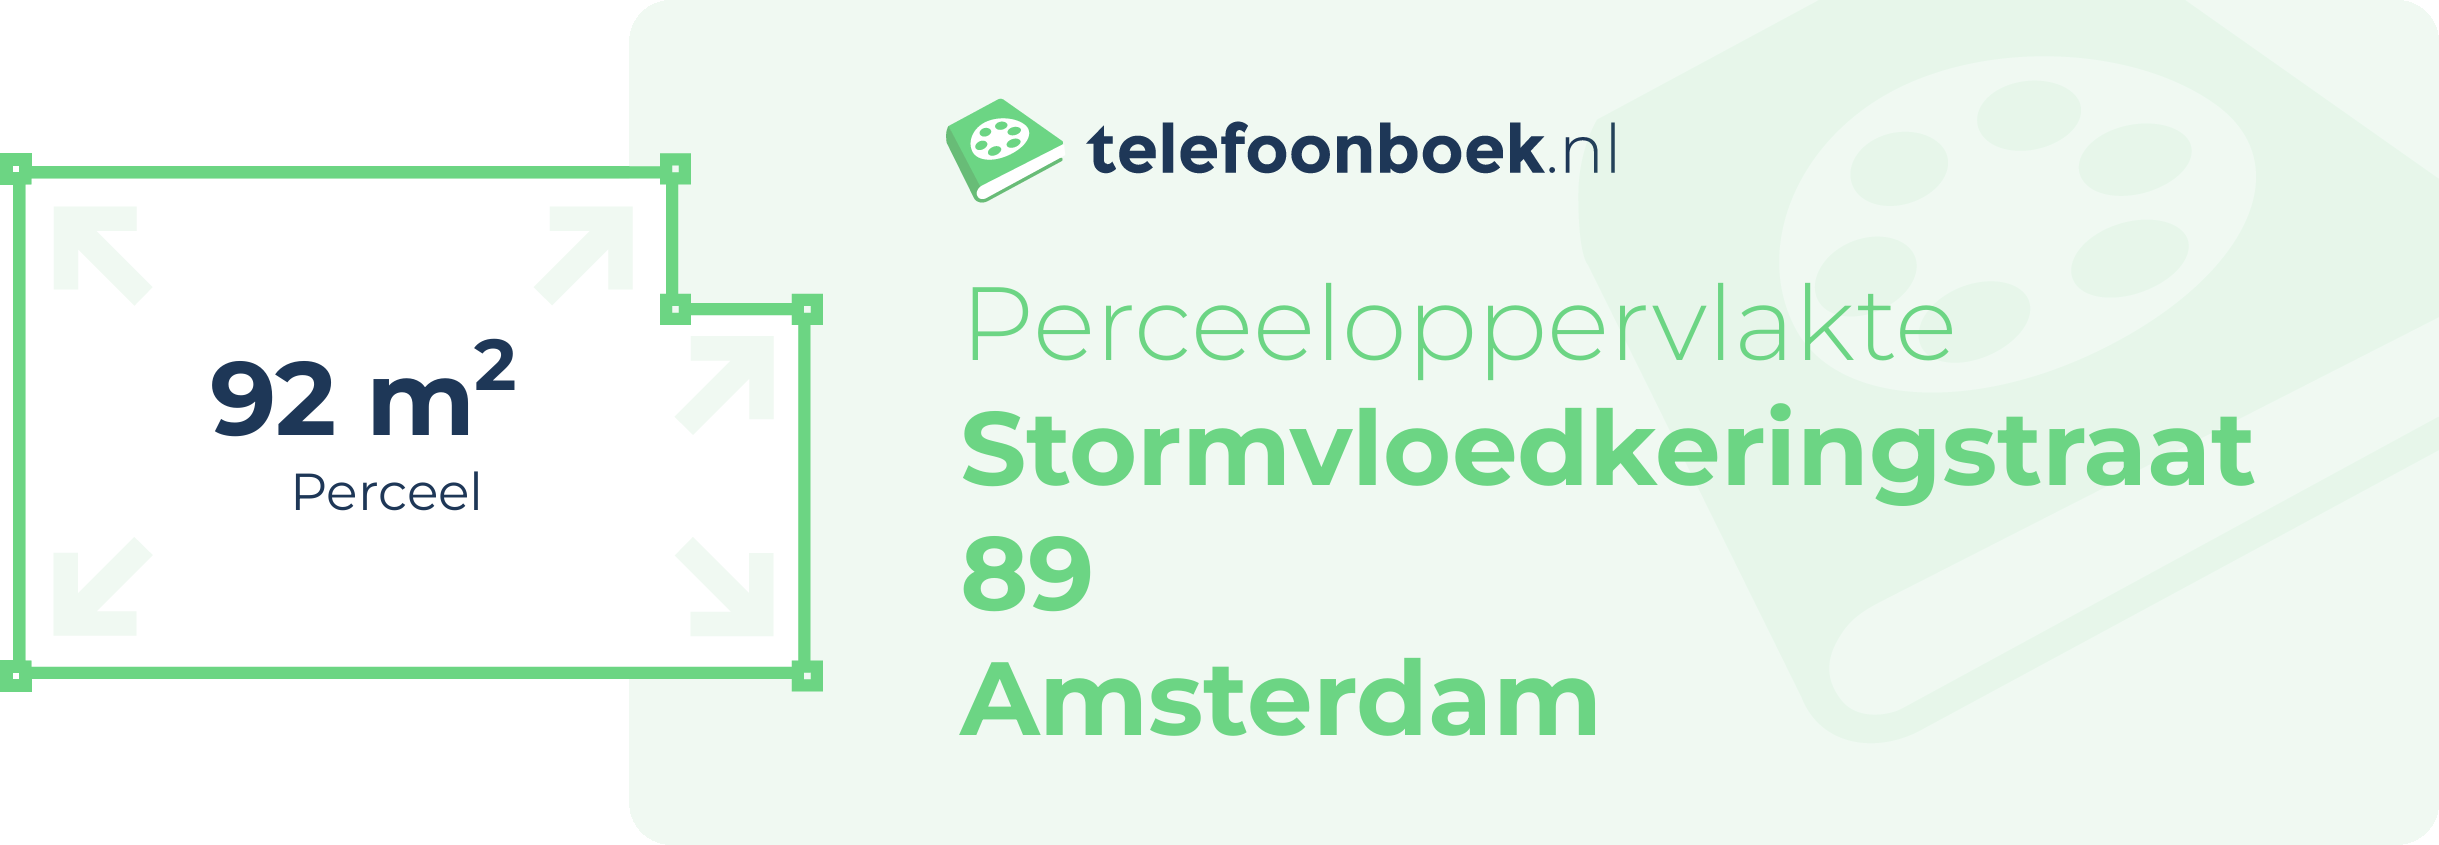 Perceeloppervlakte Stormvloedkeringstraat 89 Amsterdam